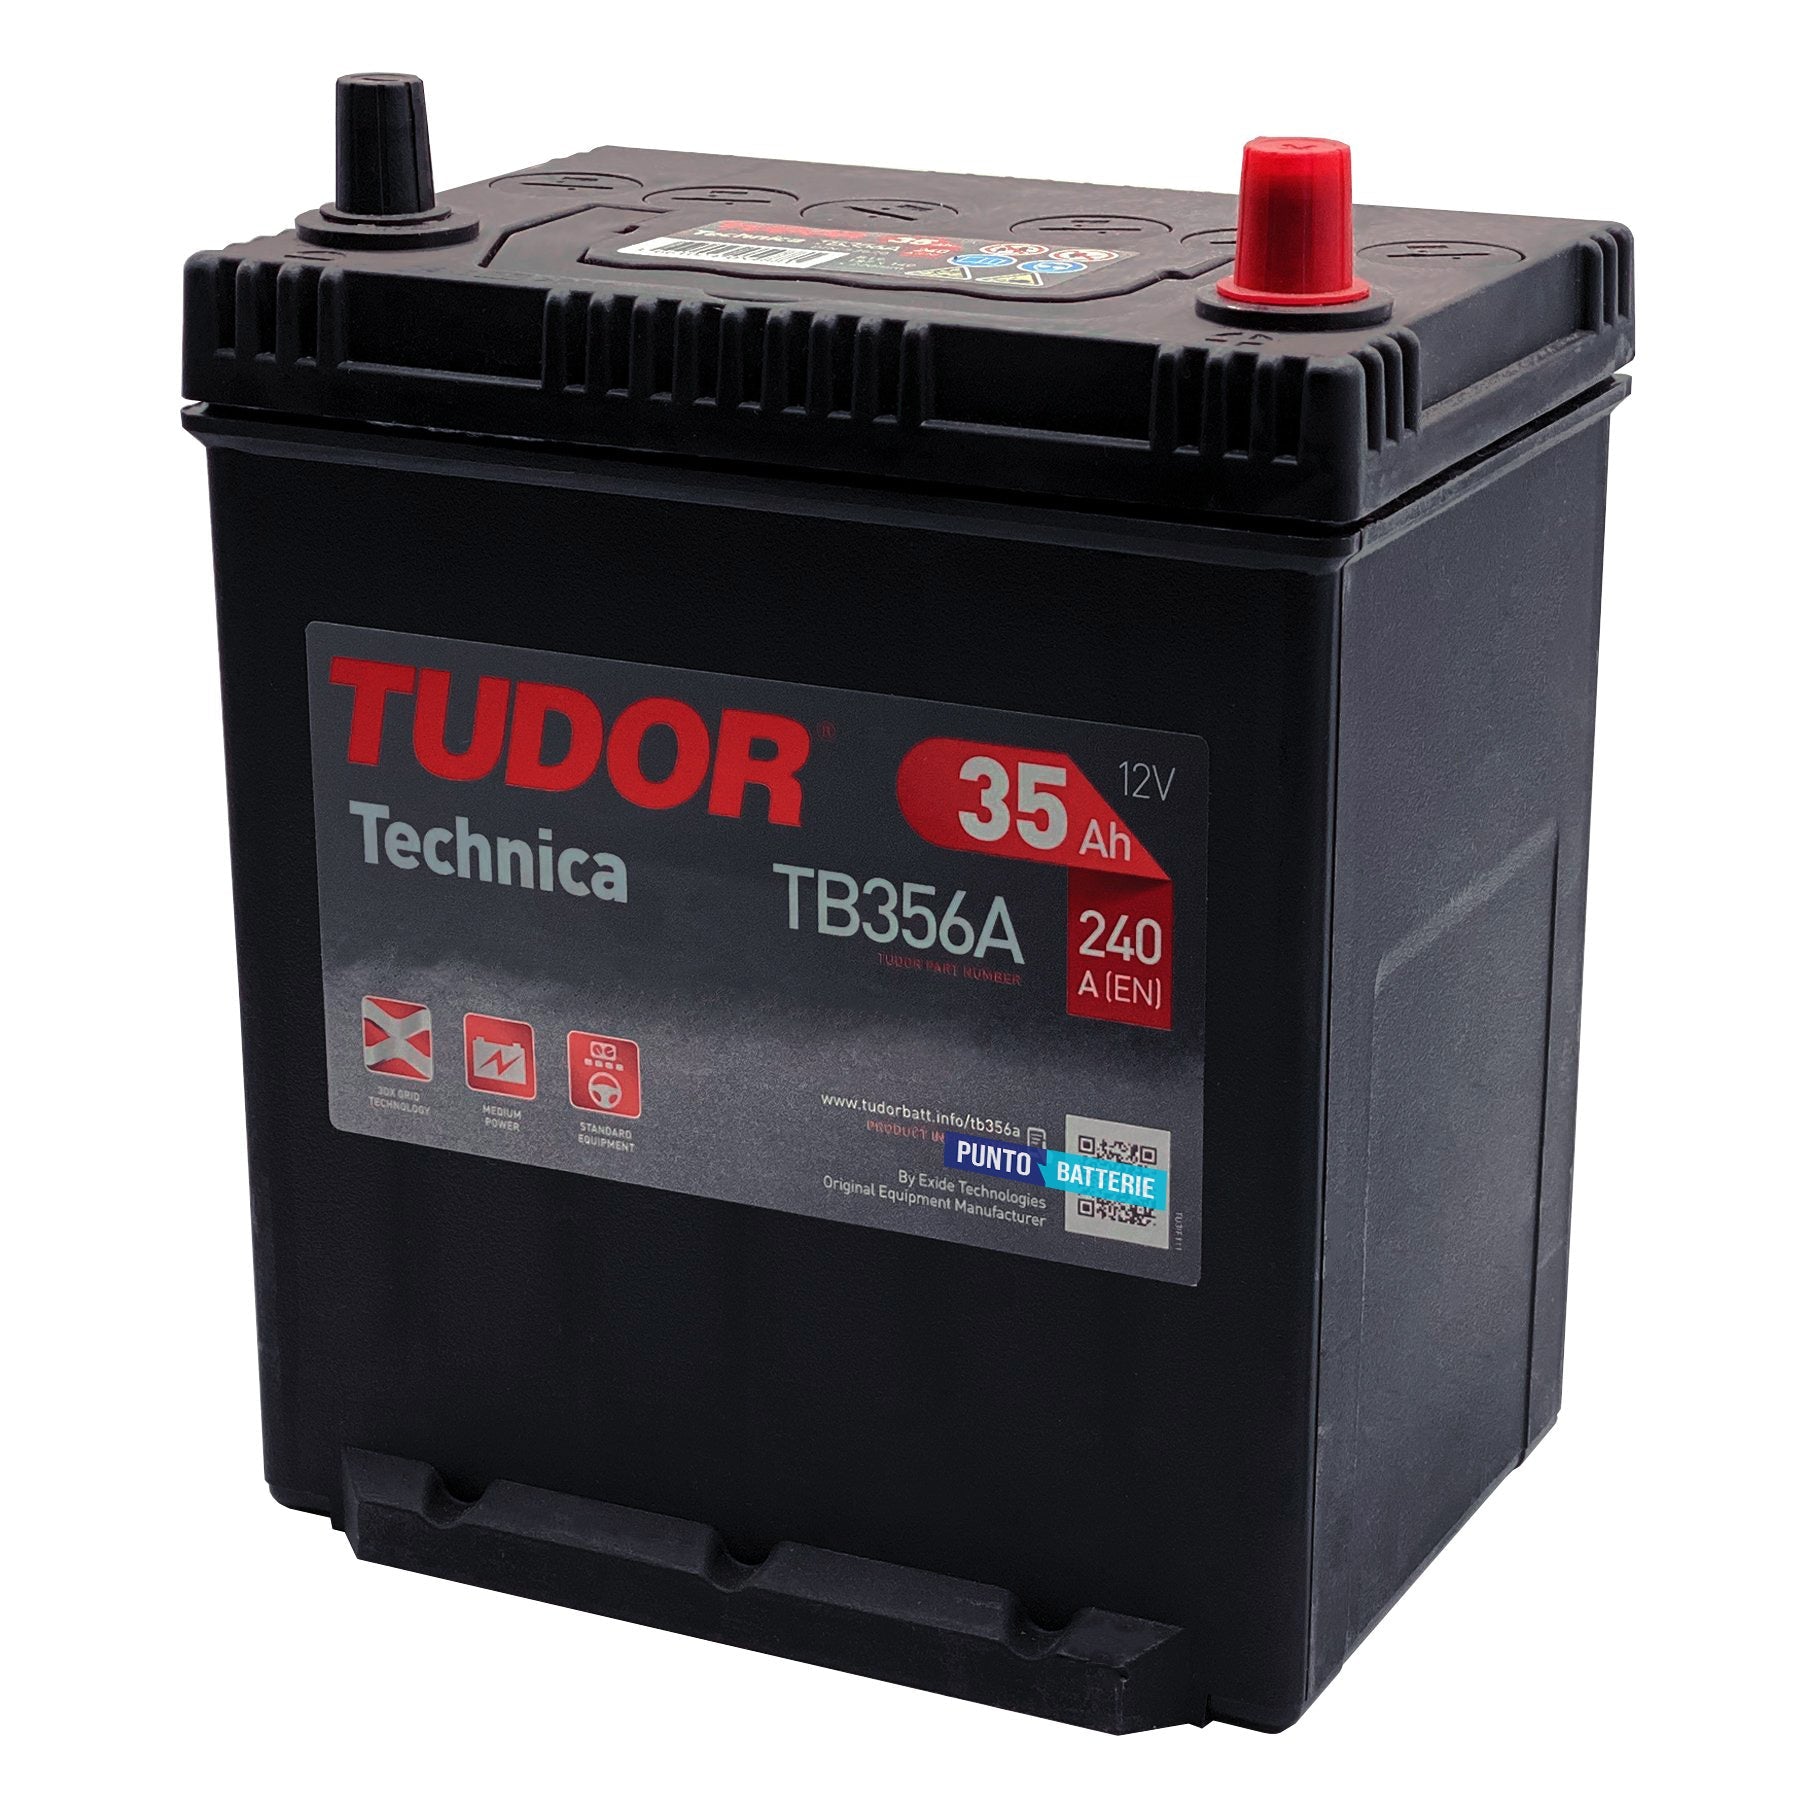 Batteria originale Tudor Technica TB356A, dimensioni 187 x 127 x 220, polo positivo a destra, 12 volt, 35 amperora, 240 ampere. Batteria per auto e veicoli leggeri.